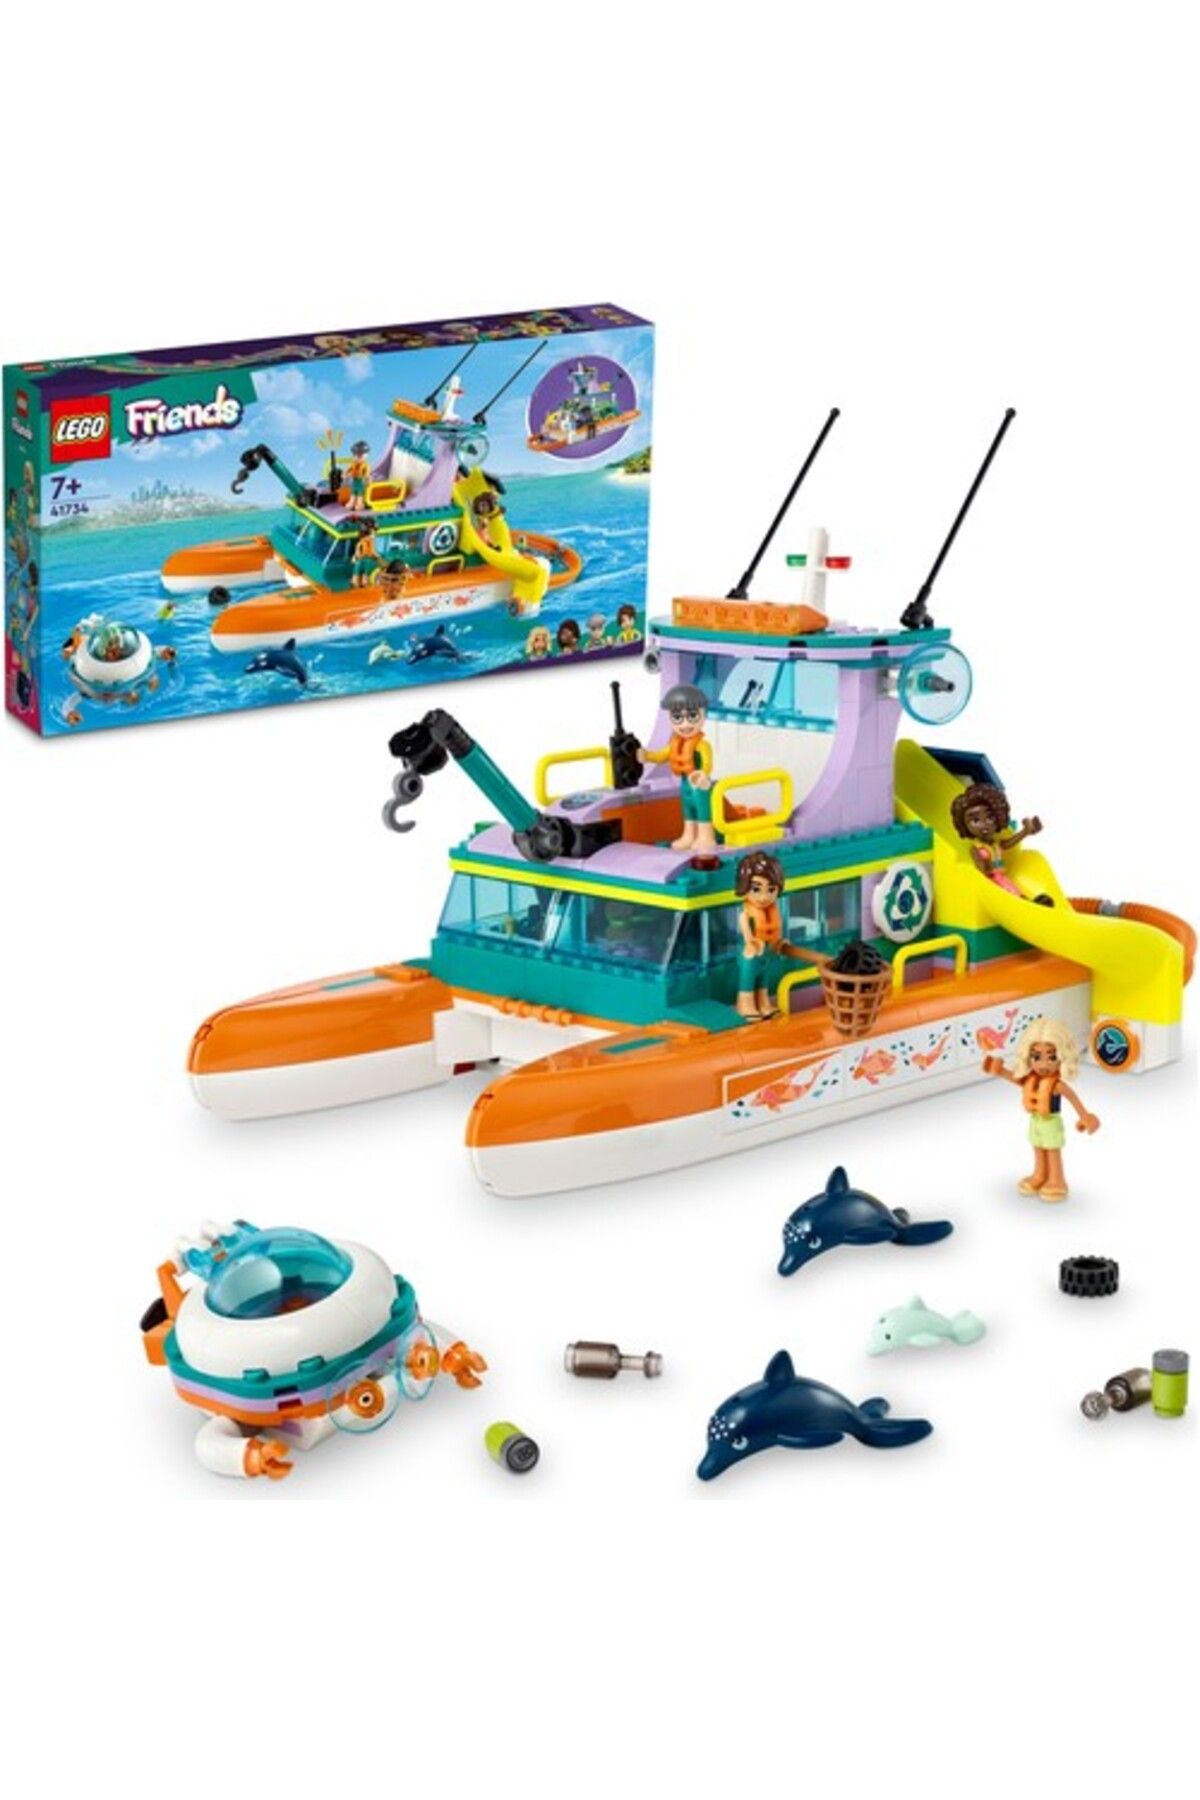 LEGO لگو مجموعه ساختمانی قایق نجات دریایی دوستان 41734 (717 قطعه)